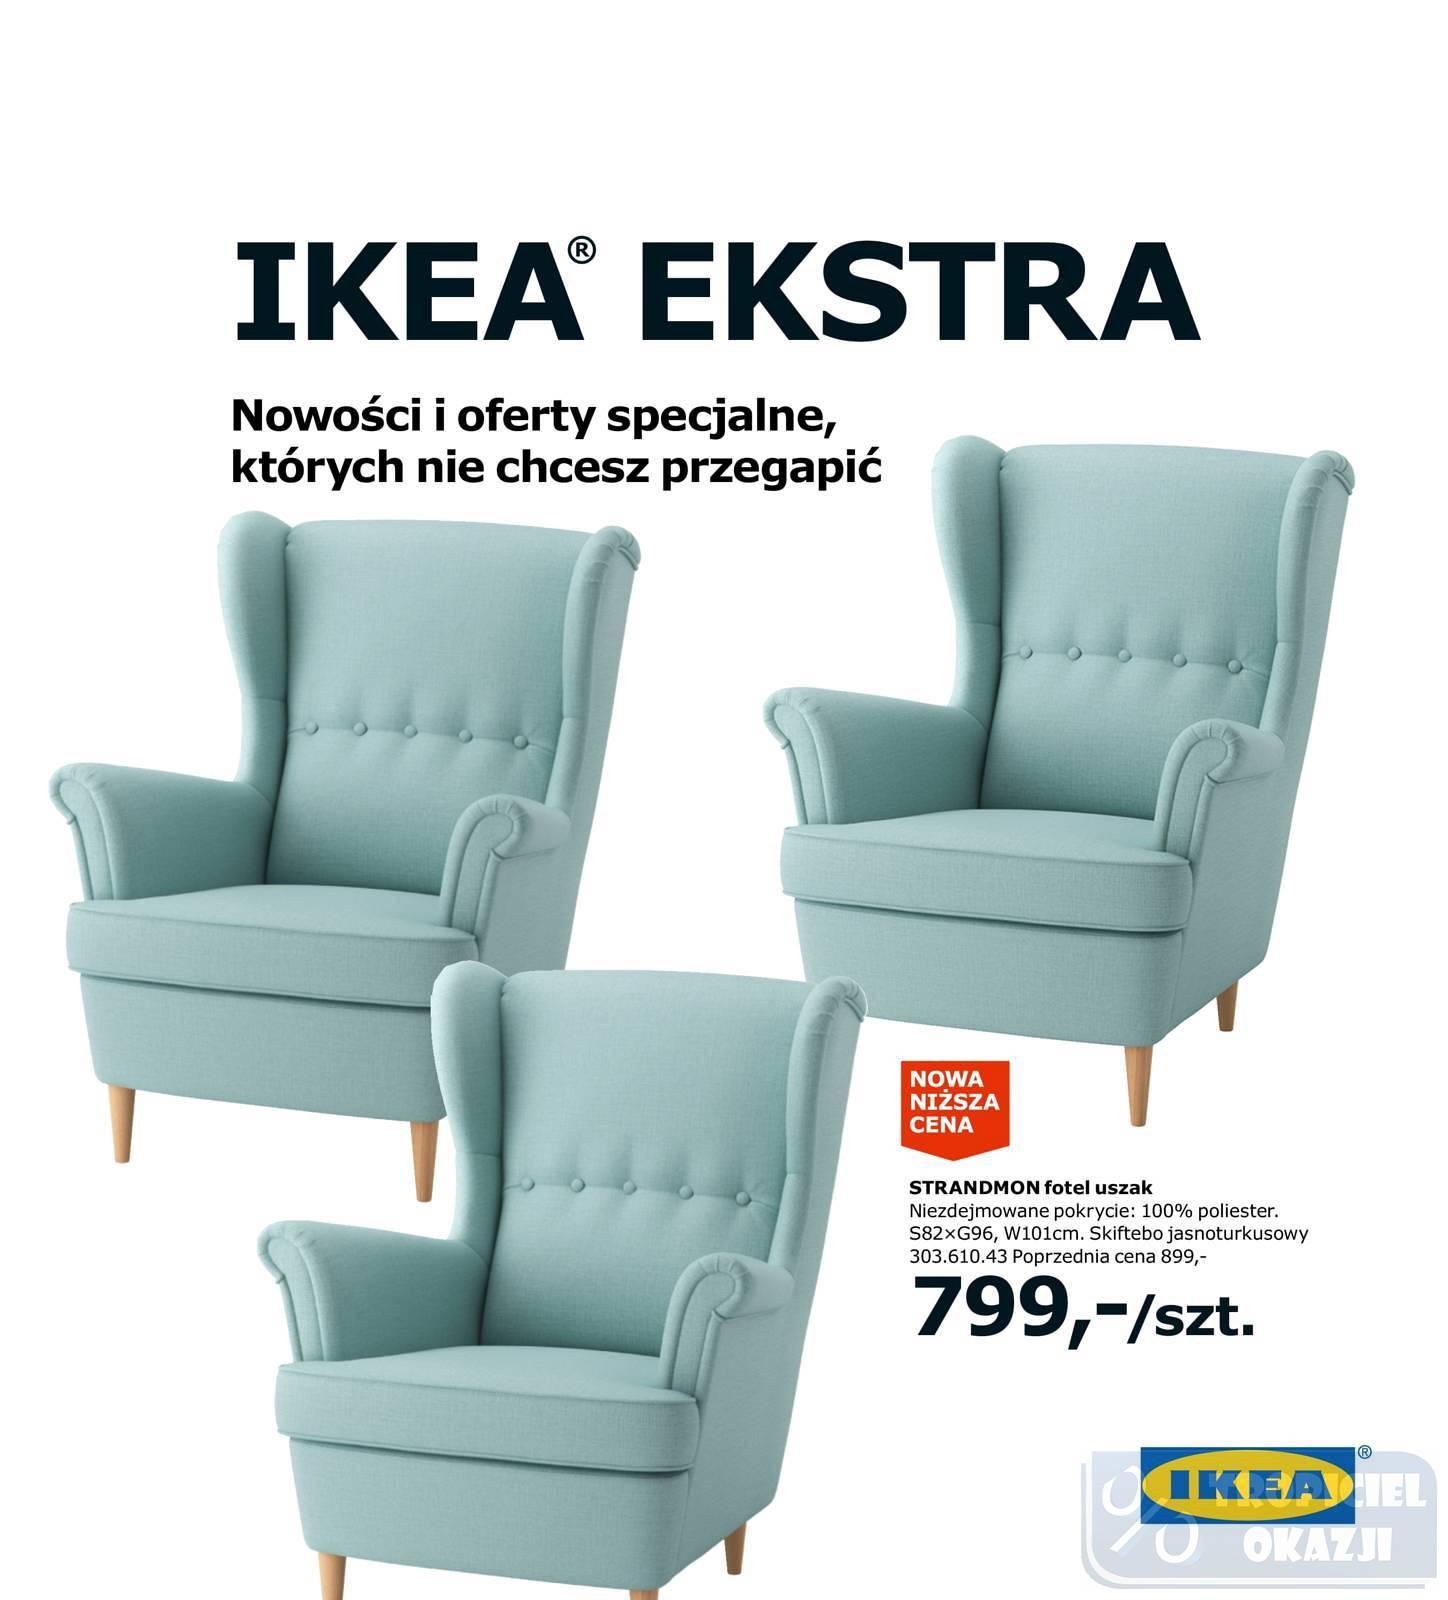 Gazetka promocyjna IKEA do 31/12/2017 str.0